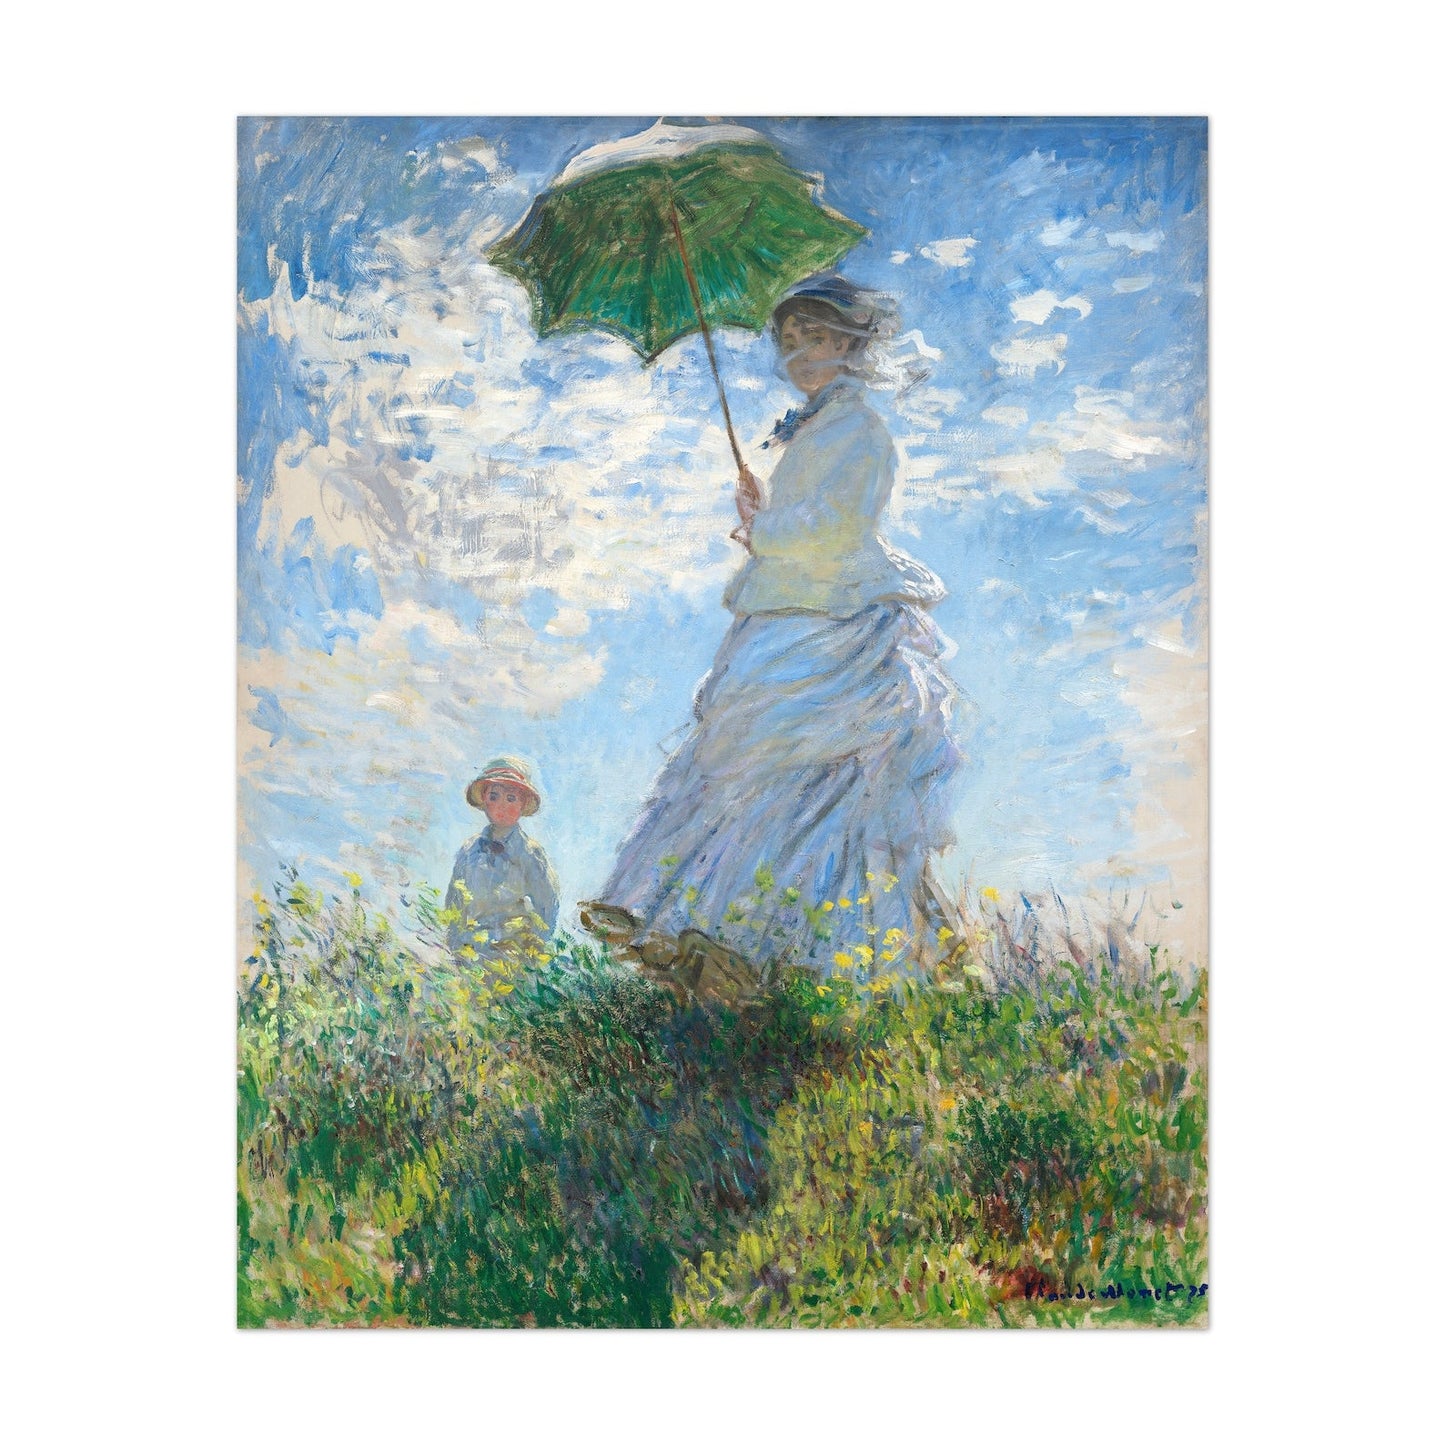 CLAUDE MONET - Woman With Parasol - Madame Monet & Her Son - Pathos Studio - Art Prints